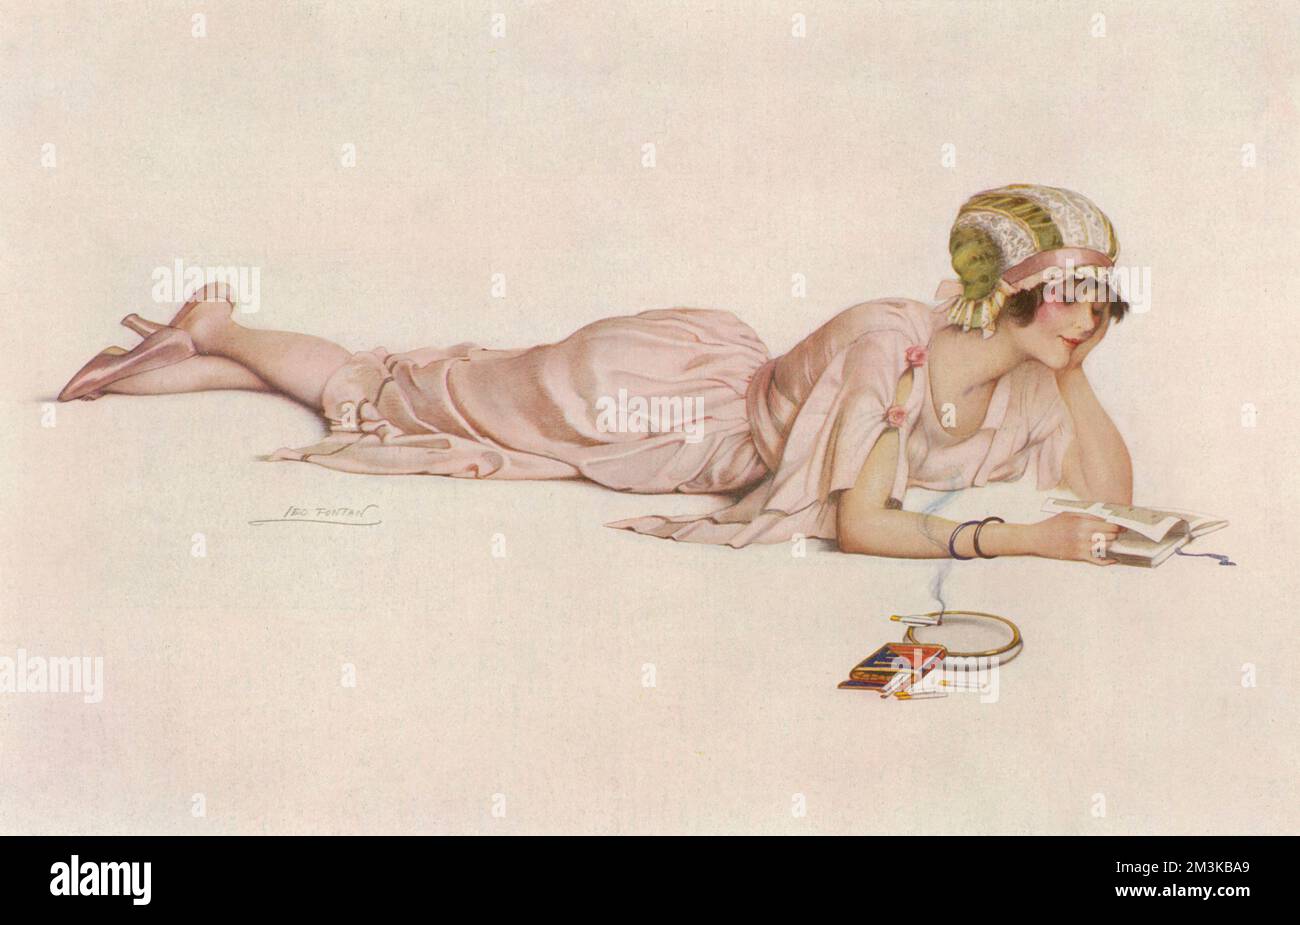 Eine zufrieden aussehende junge Frau, die ein schönes rosa Kleid aus Seide, dazu passende Schuhe und eine Spitzenkappe trägt, genießt etwas Zeit für mich, während sie ein Buch liest, das flach auf ihrem Bauch liegt und wie ein Kamin raucht. Datum: 1920 Stockfoto